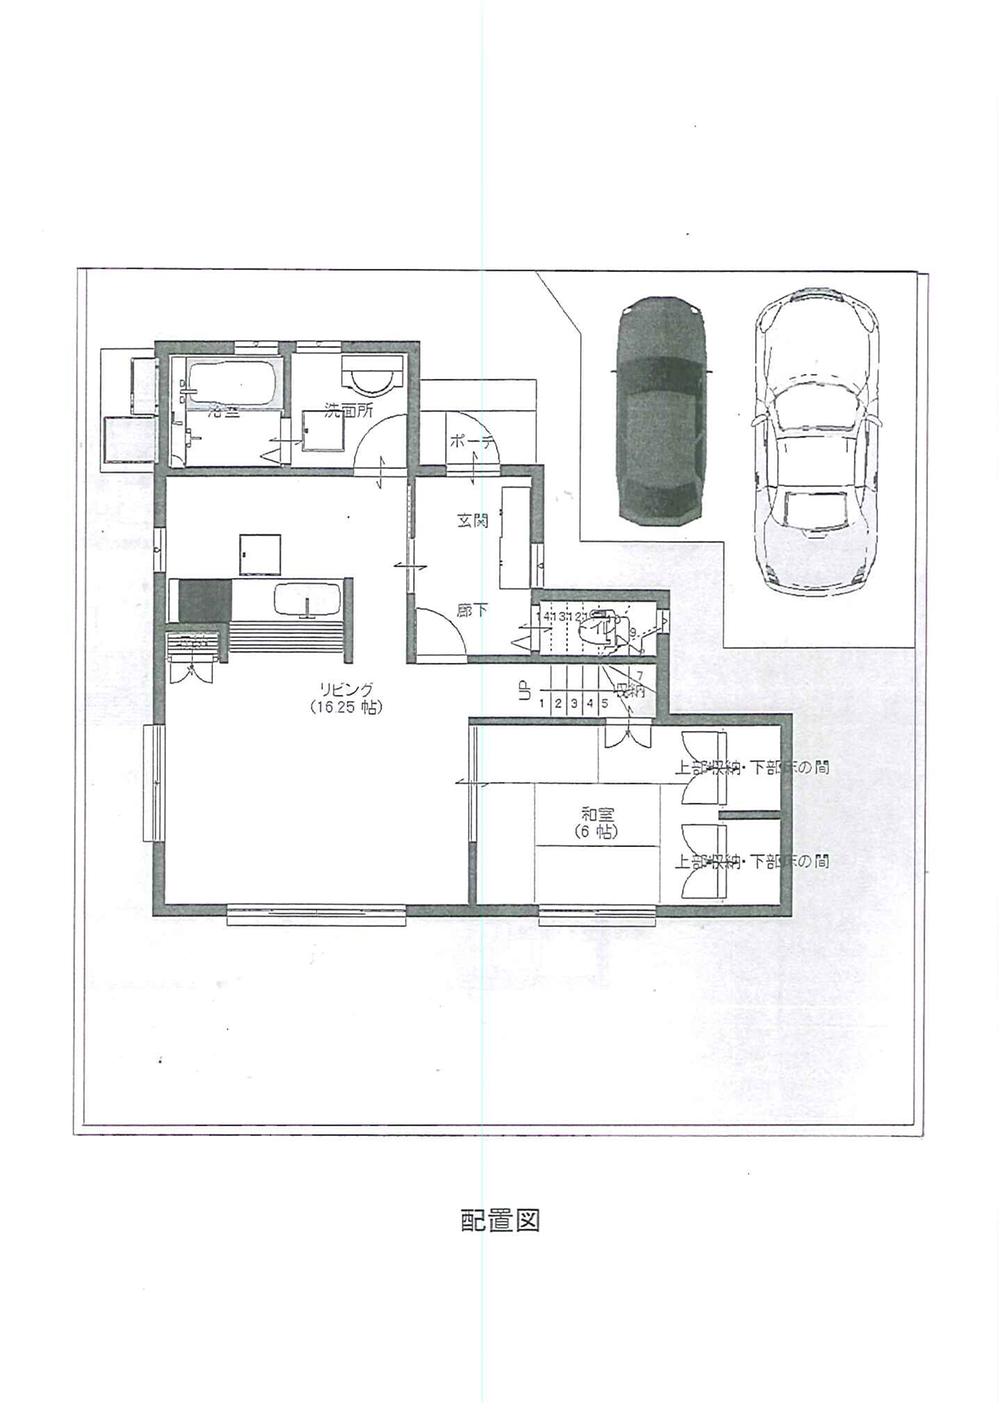 Compartment figure. 27,800,000 yen, 4LDK, Land area 156.73 sq m , Building area 106.82 sq m layout